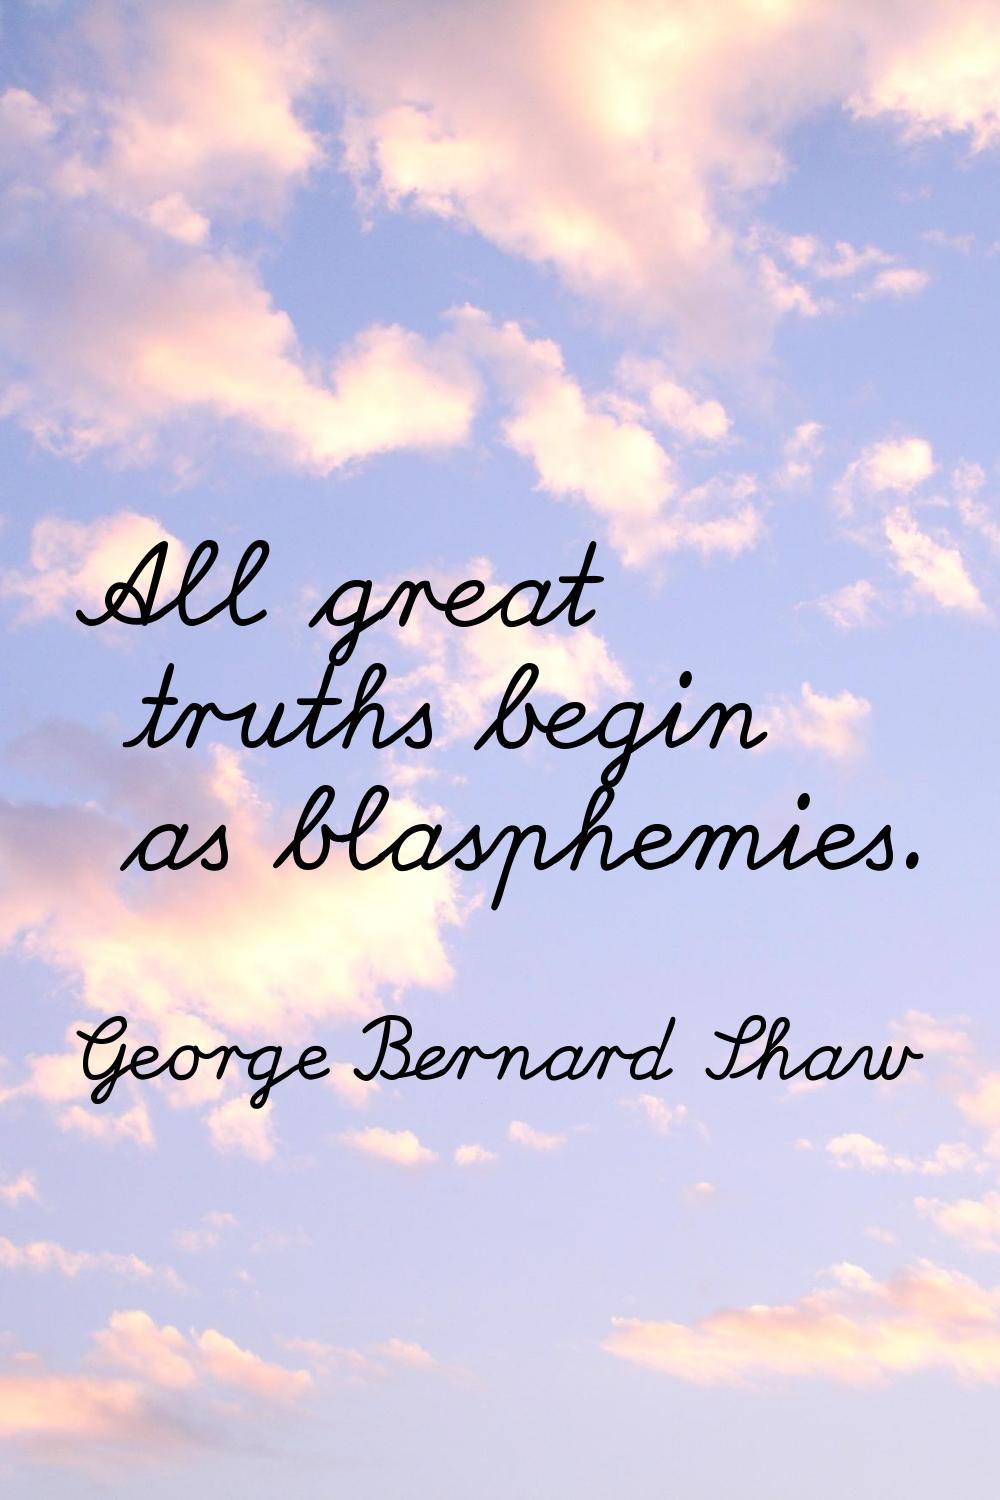 All great truths begin as blasphemies.